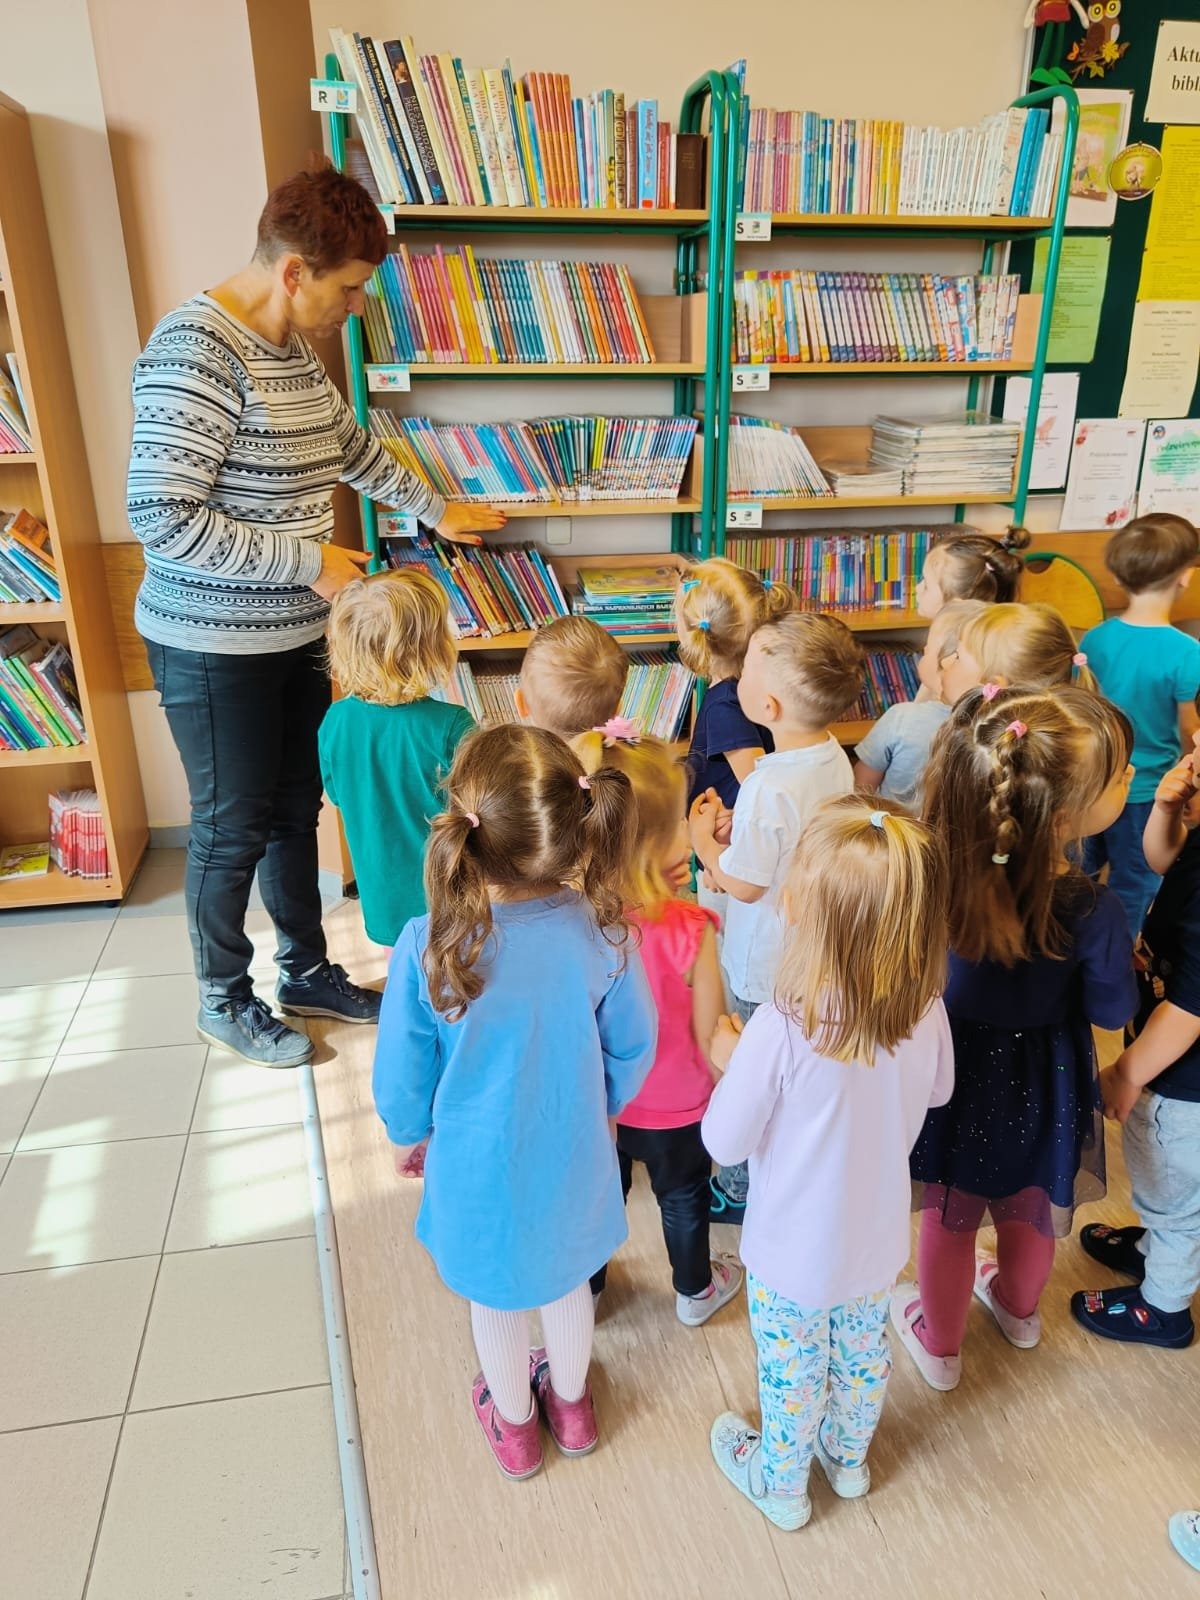 Pani Bibliotekarka pokazuje dzieciom gdzie znajdują się książeczki dla najmłodszych.